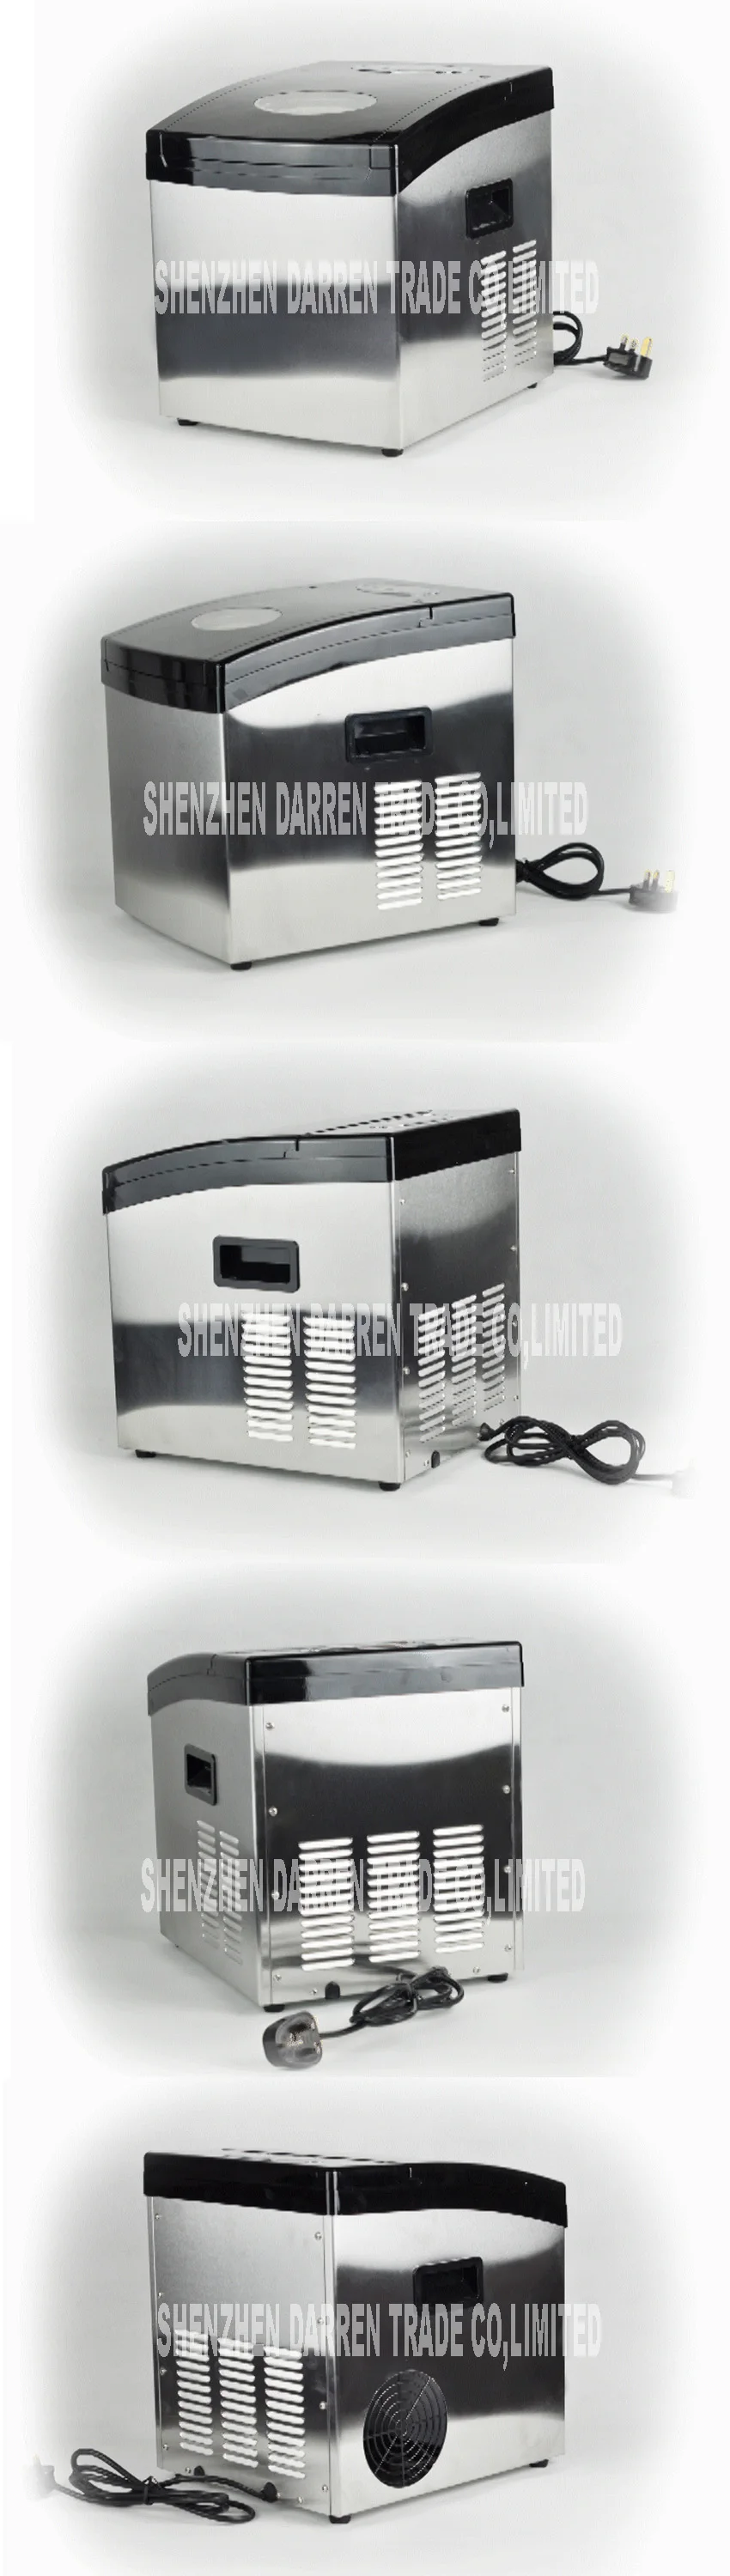 Мини льдогенератор 20 кг/24 ч машина для приготовления льда ZB-02 домашнего использования машина для приготовления мороженого для Bubble чайного магазина/кофе/бара коммерческий 120 Вт 110 В/220 В